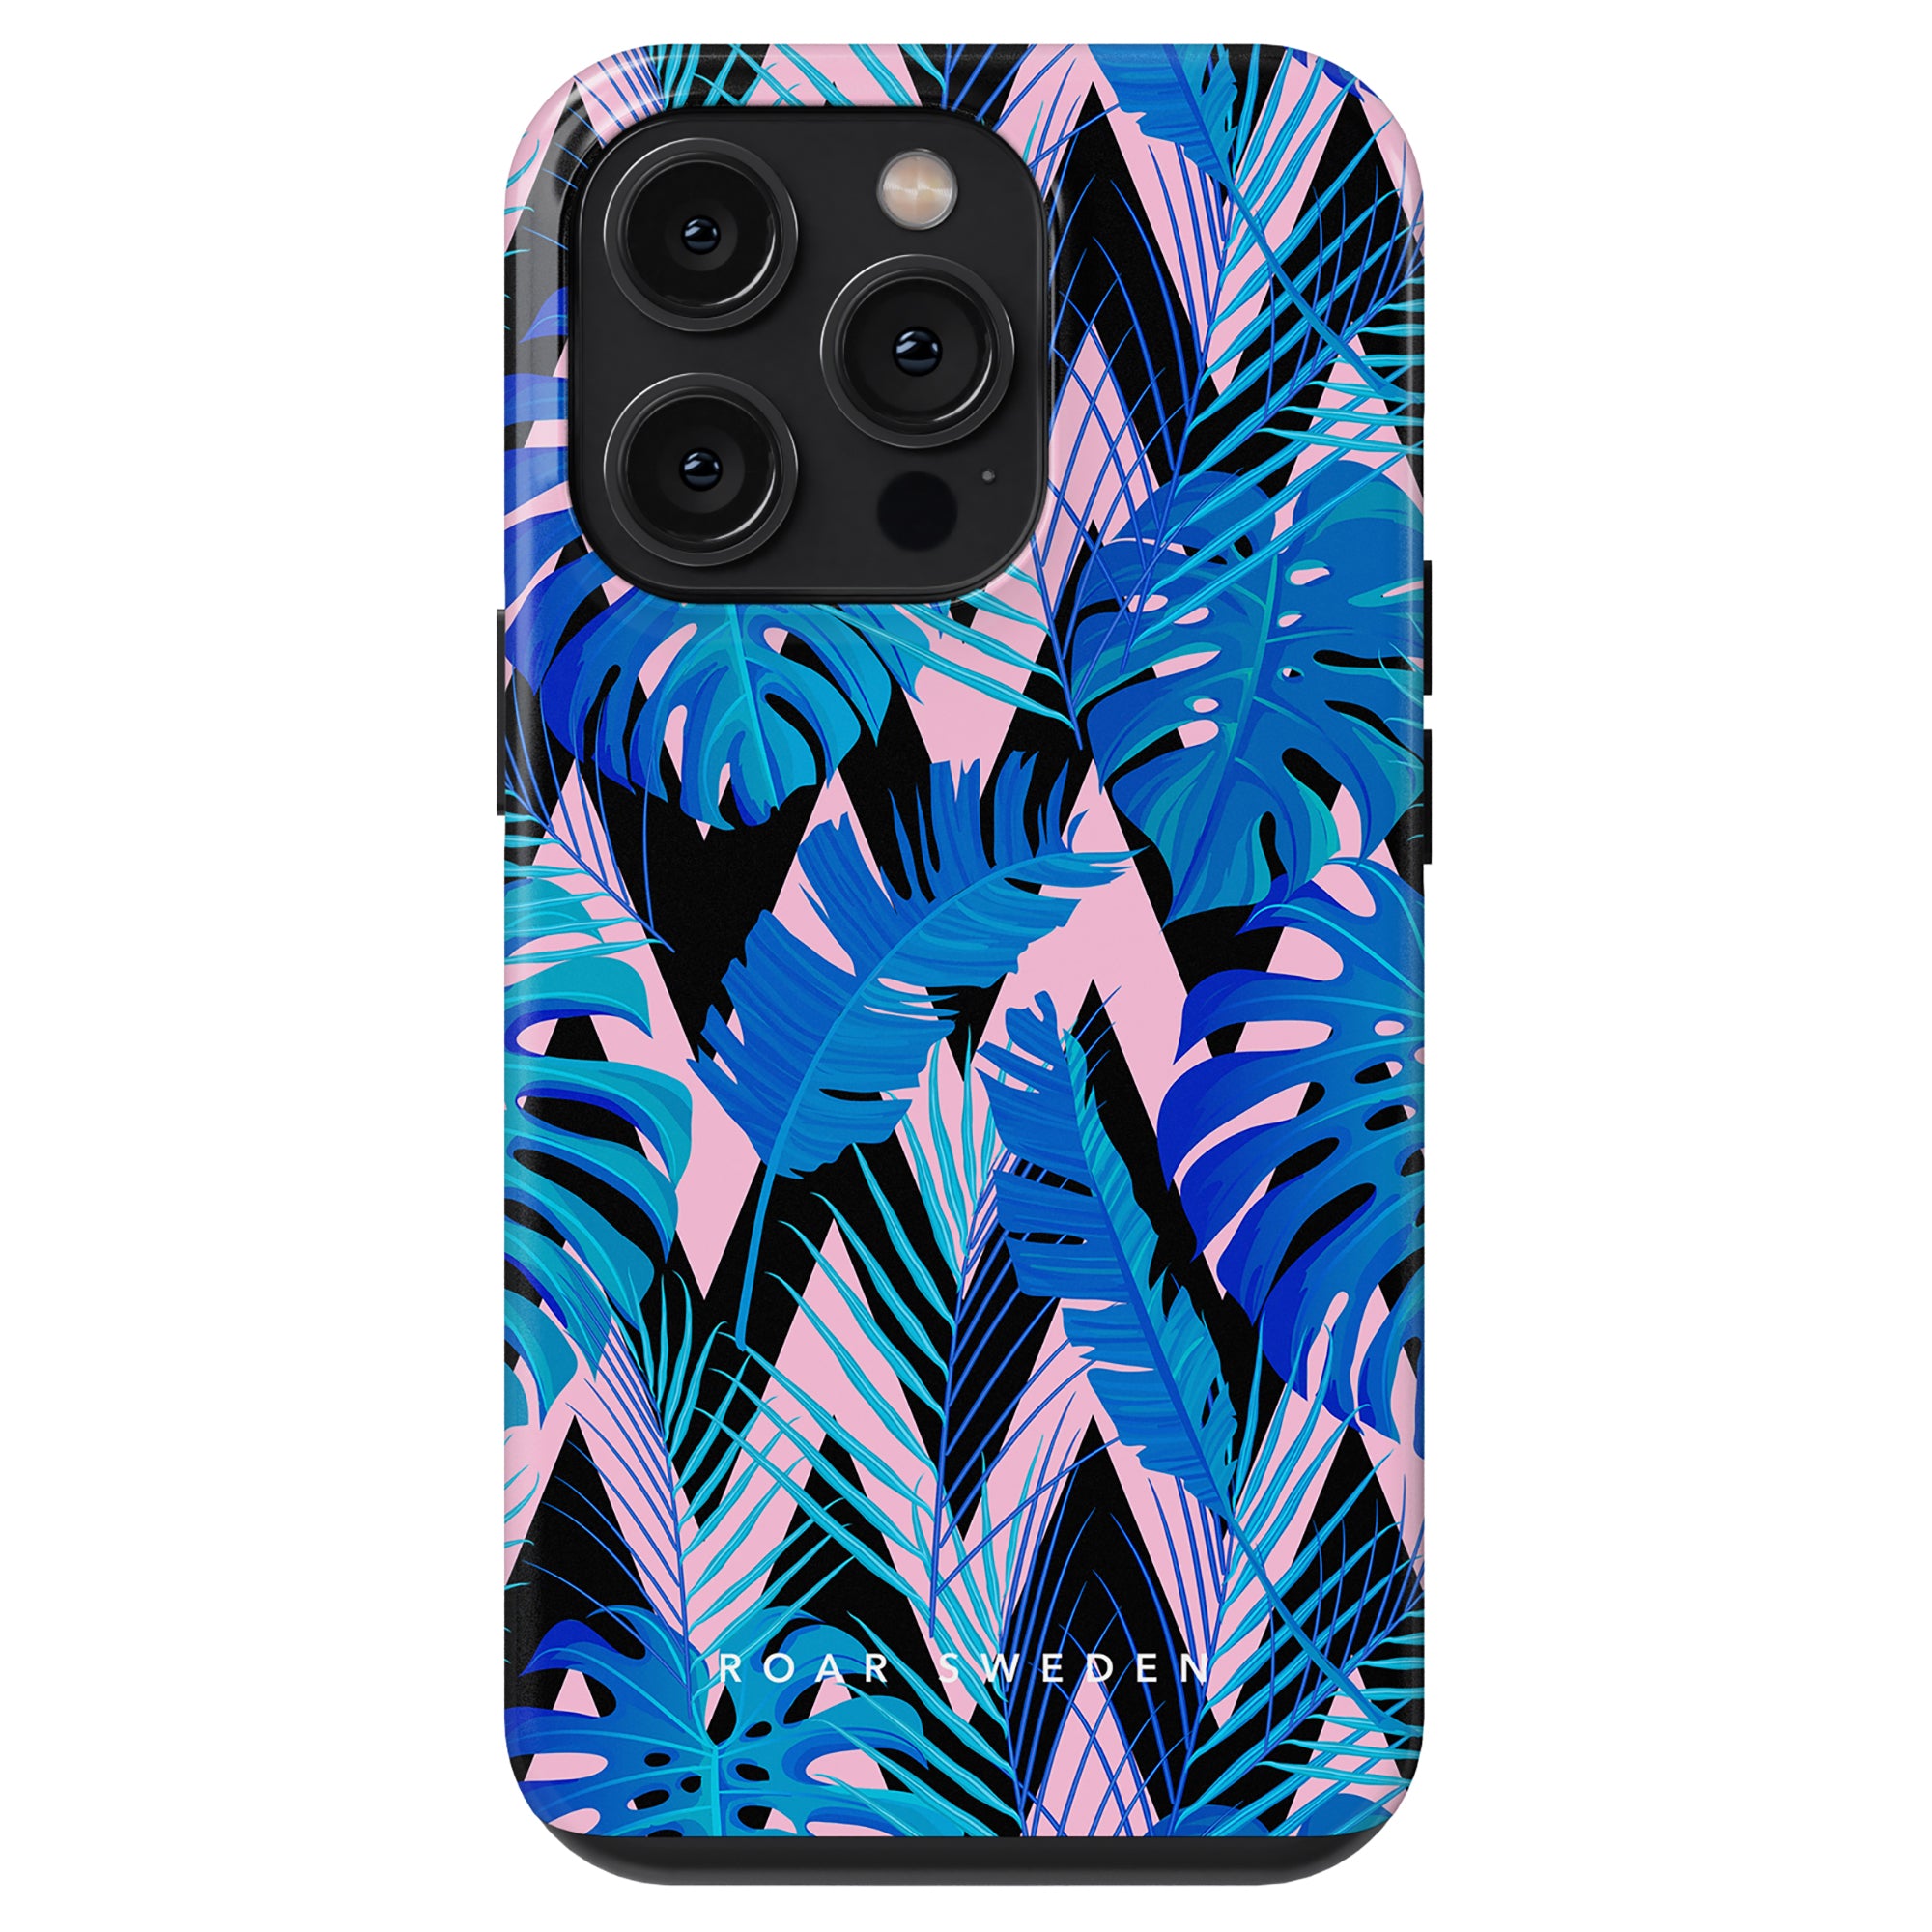 En Zigzag - Tuff telefonfodral prydd med palmblad i nyanser av blått och rosa.